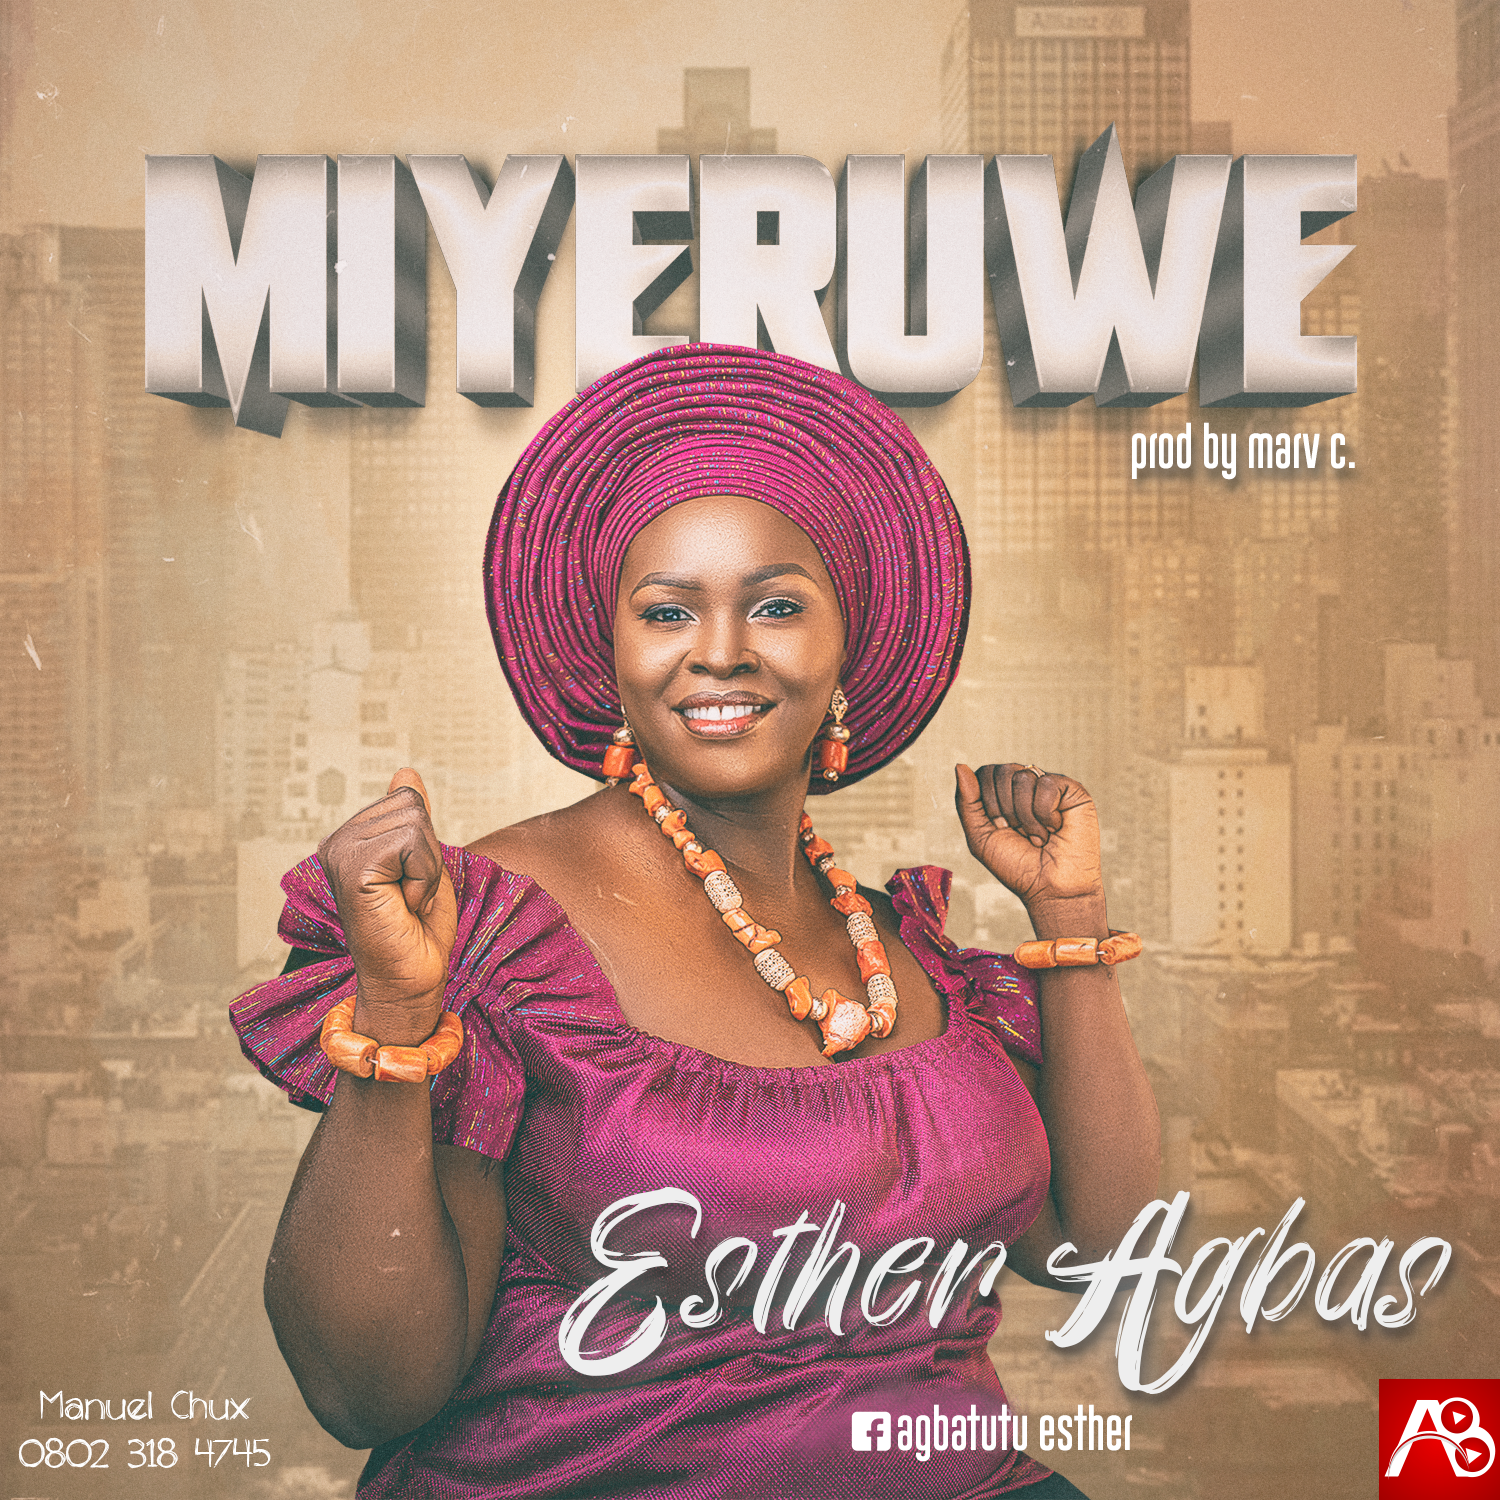 Esther Agbas Miyeruwe